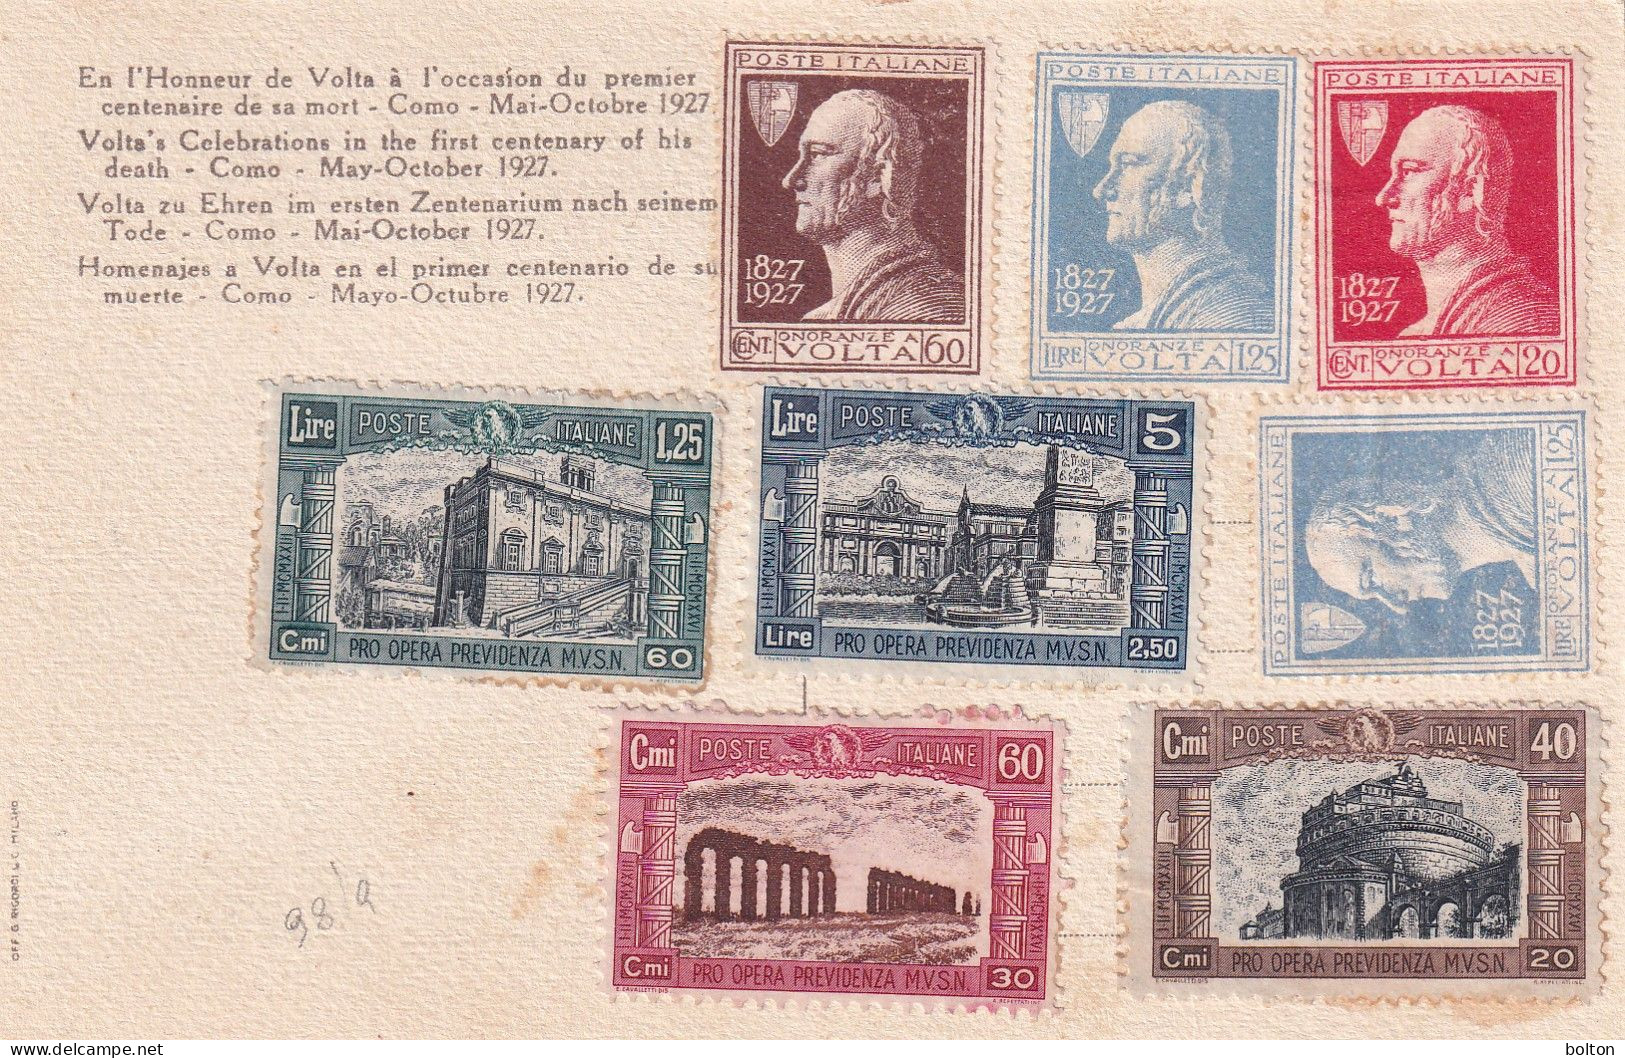 1927 Cartolina ONORANZE A VOLTA Serie Volta E Camicie Nere Non Timbrate - Poststempel